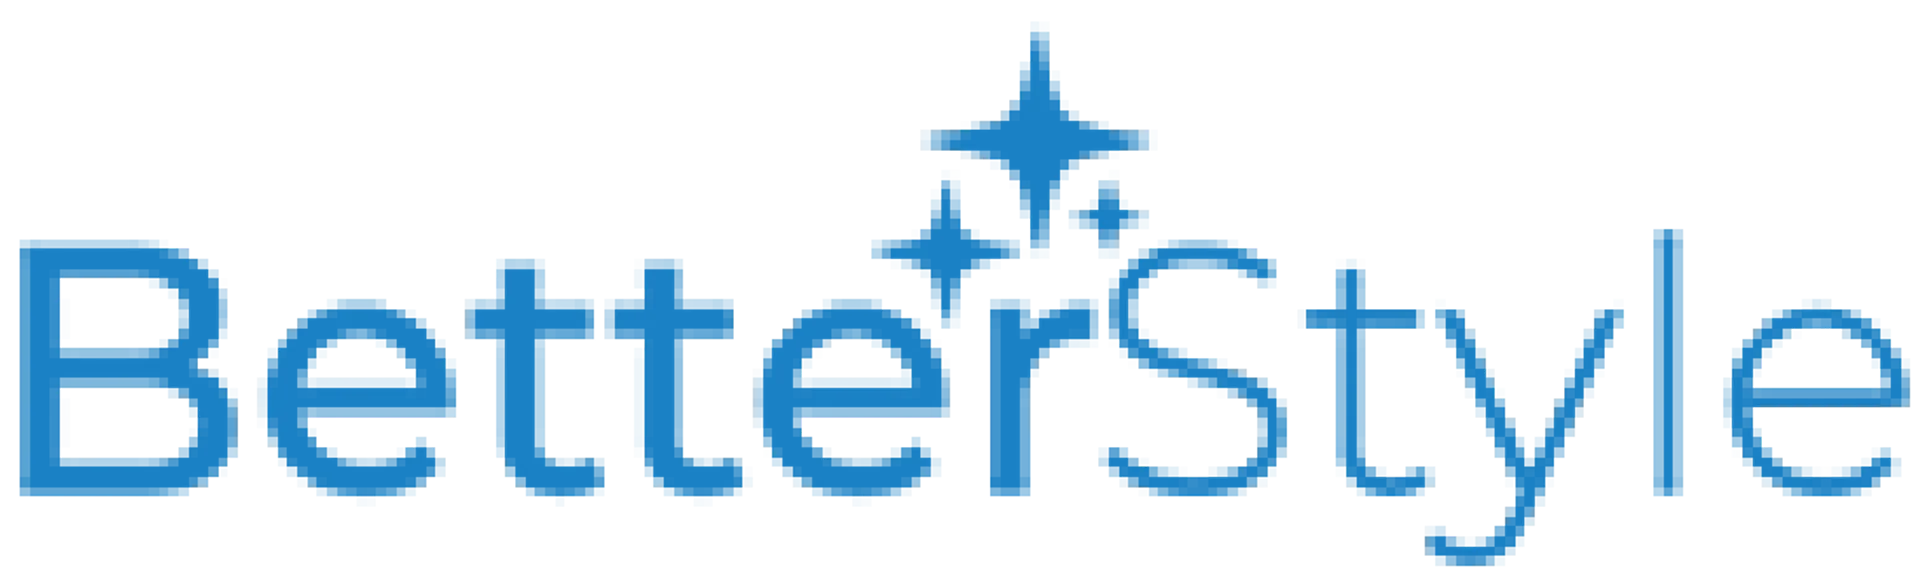 BETTERSTYLE logo